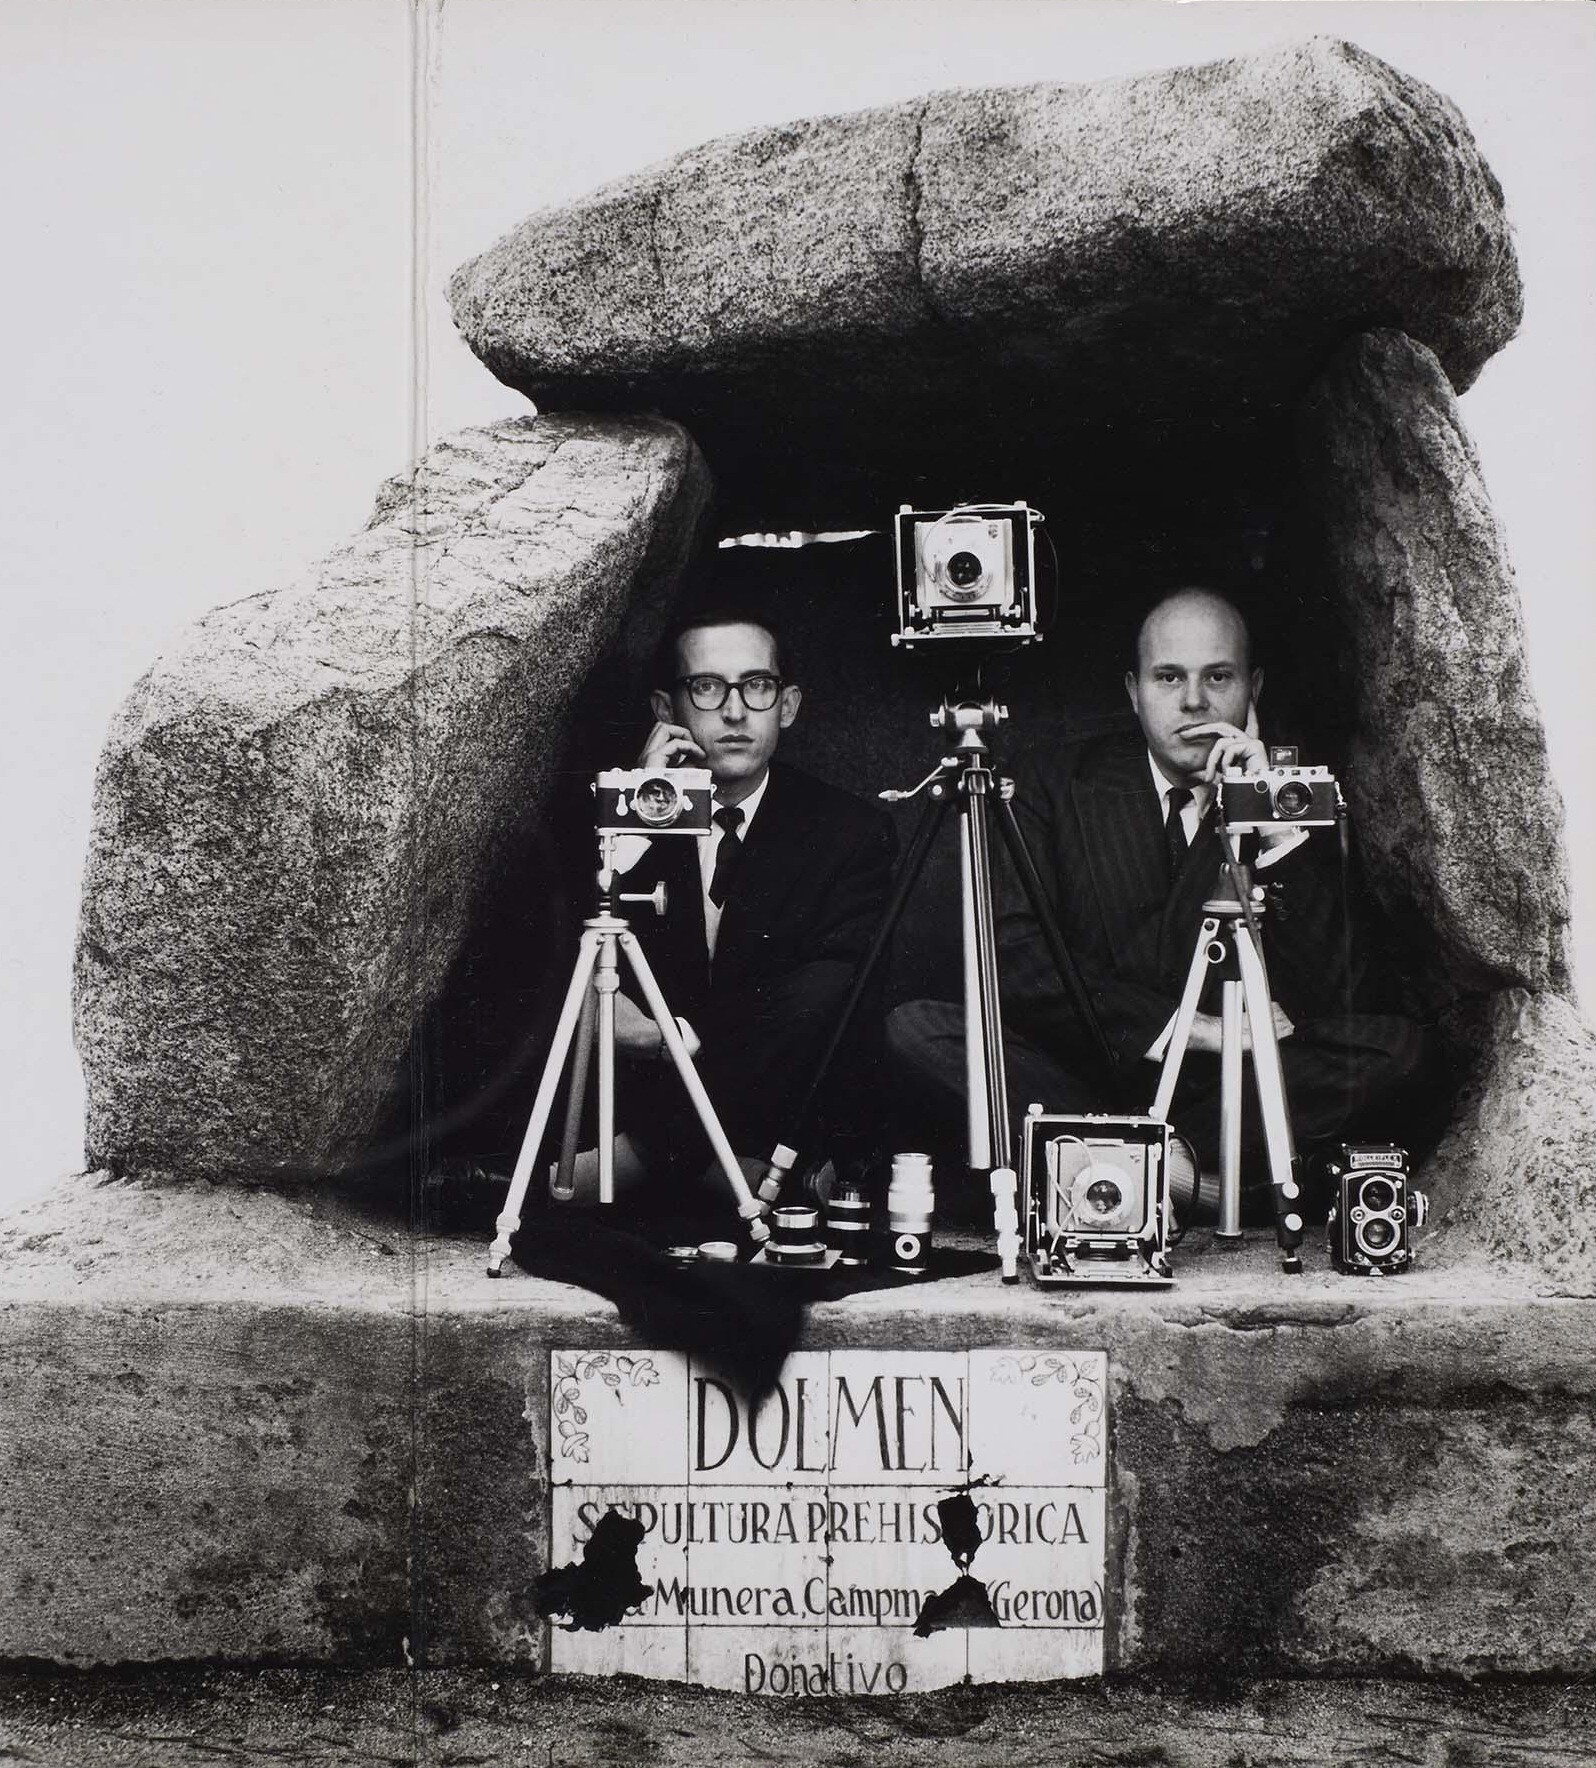 Автопортреты. Ориоль Маспонс  и Хулио Убинья, 1958